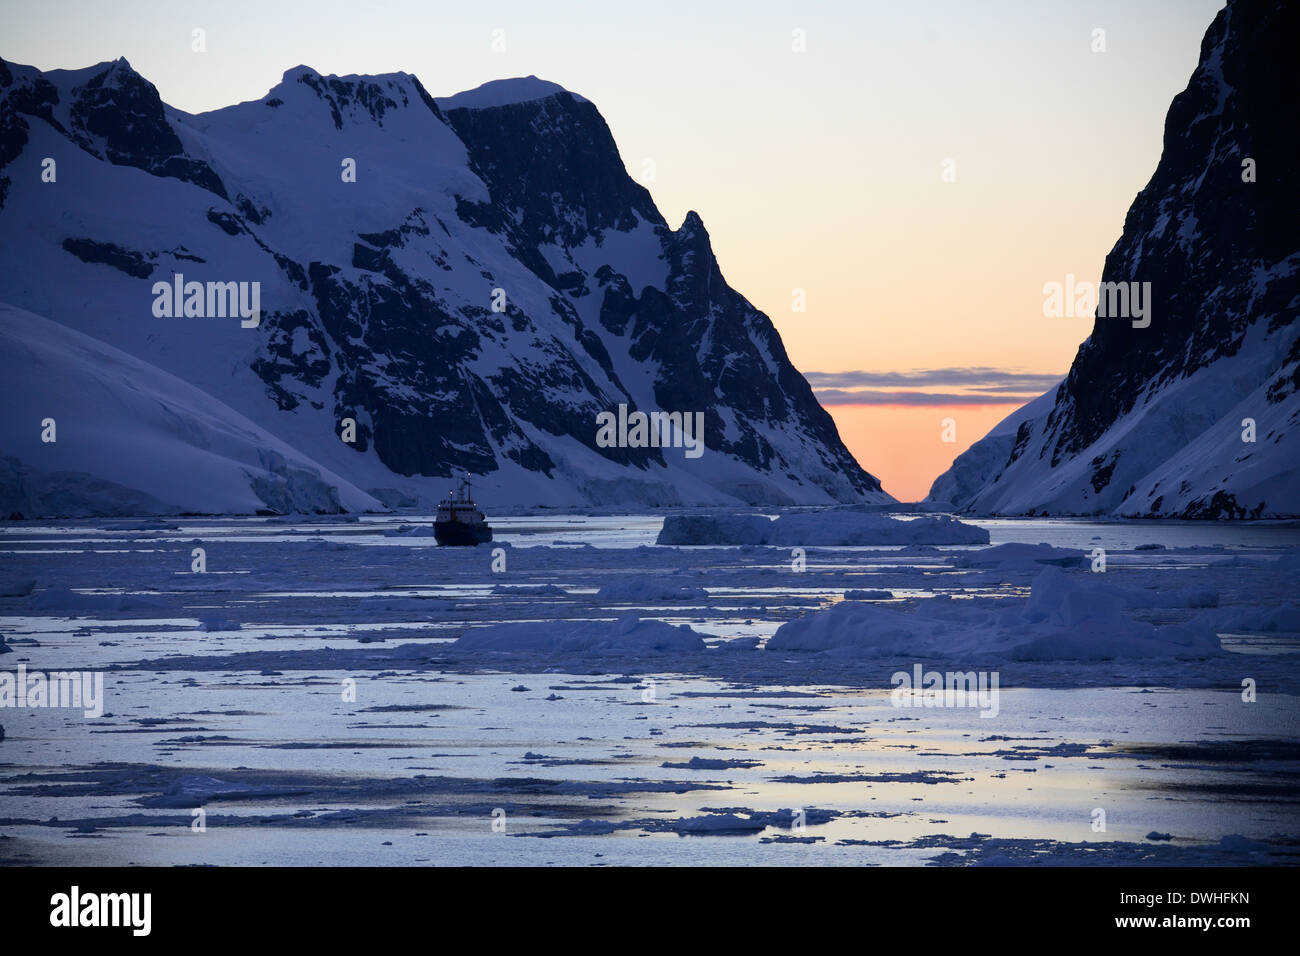 Soleil de minuit (à 3h) dans le canal de Lamairé sur la péninsule Antarctique dans l'Antarctique. Banque D'Images